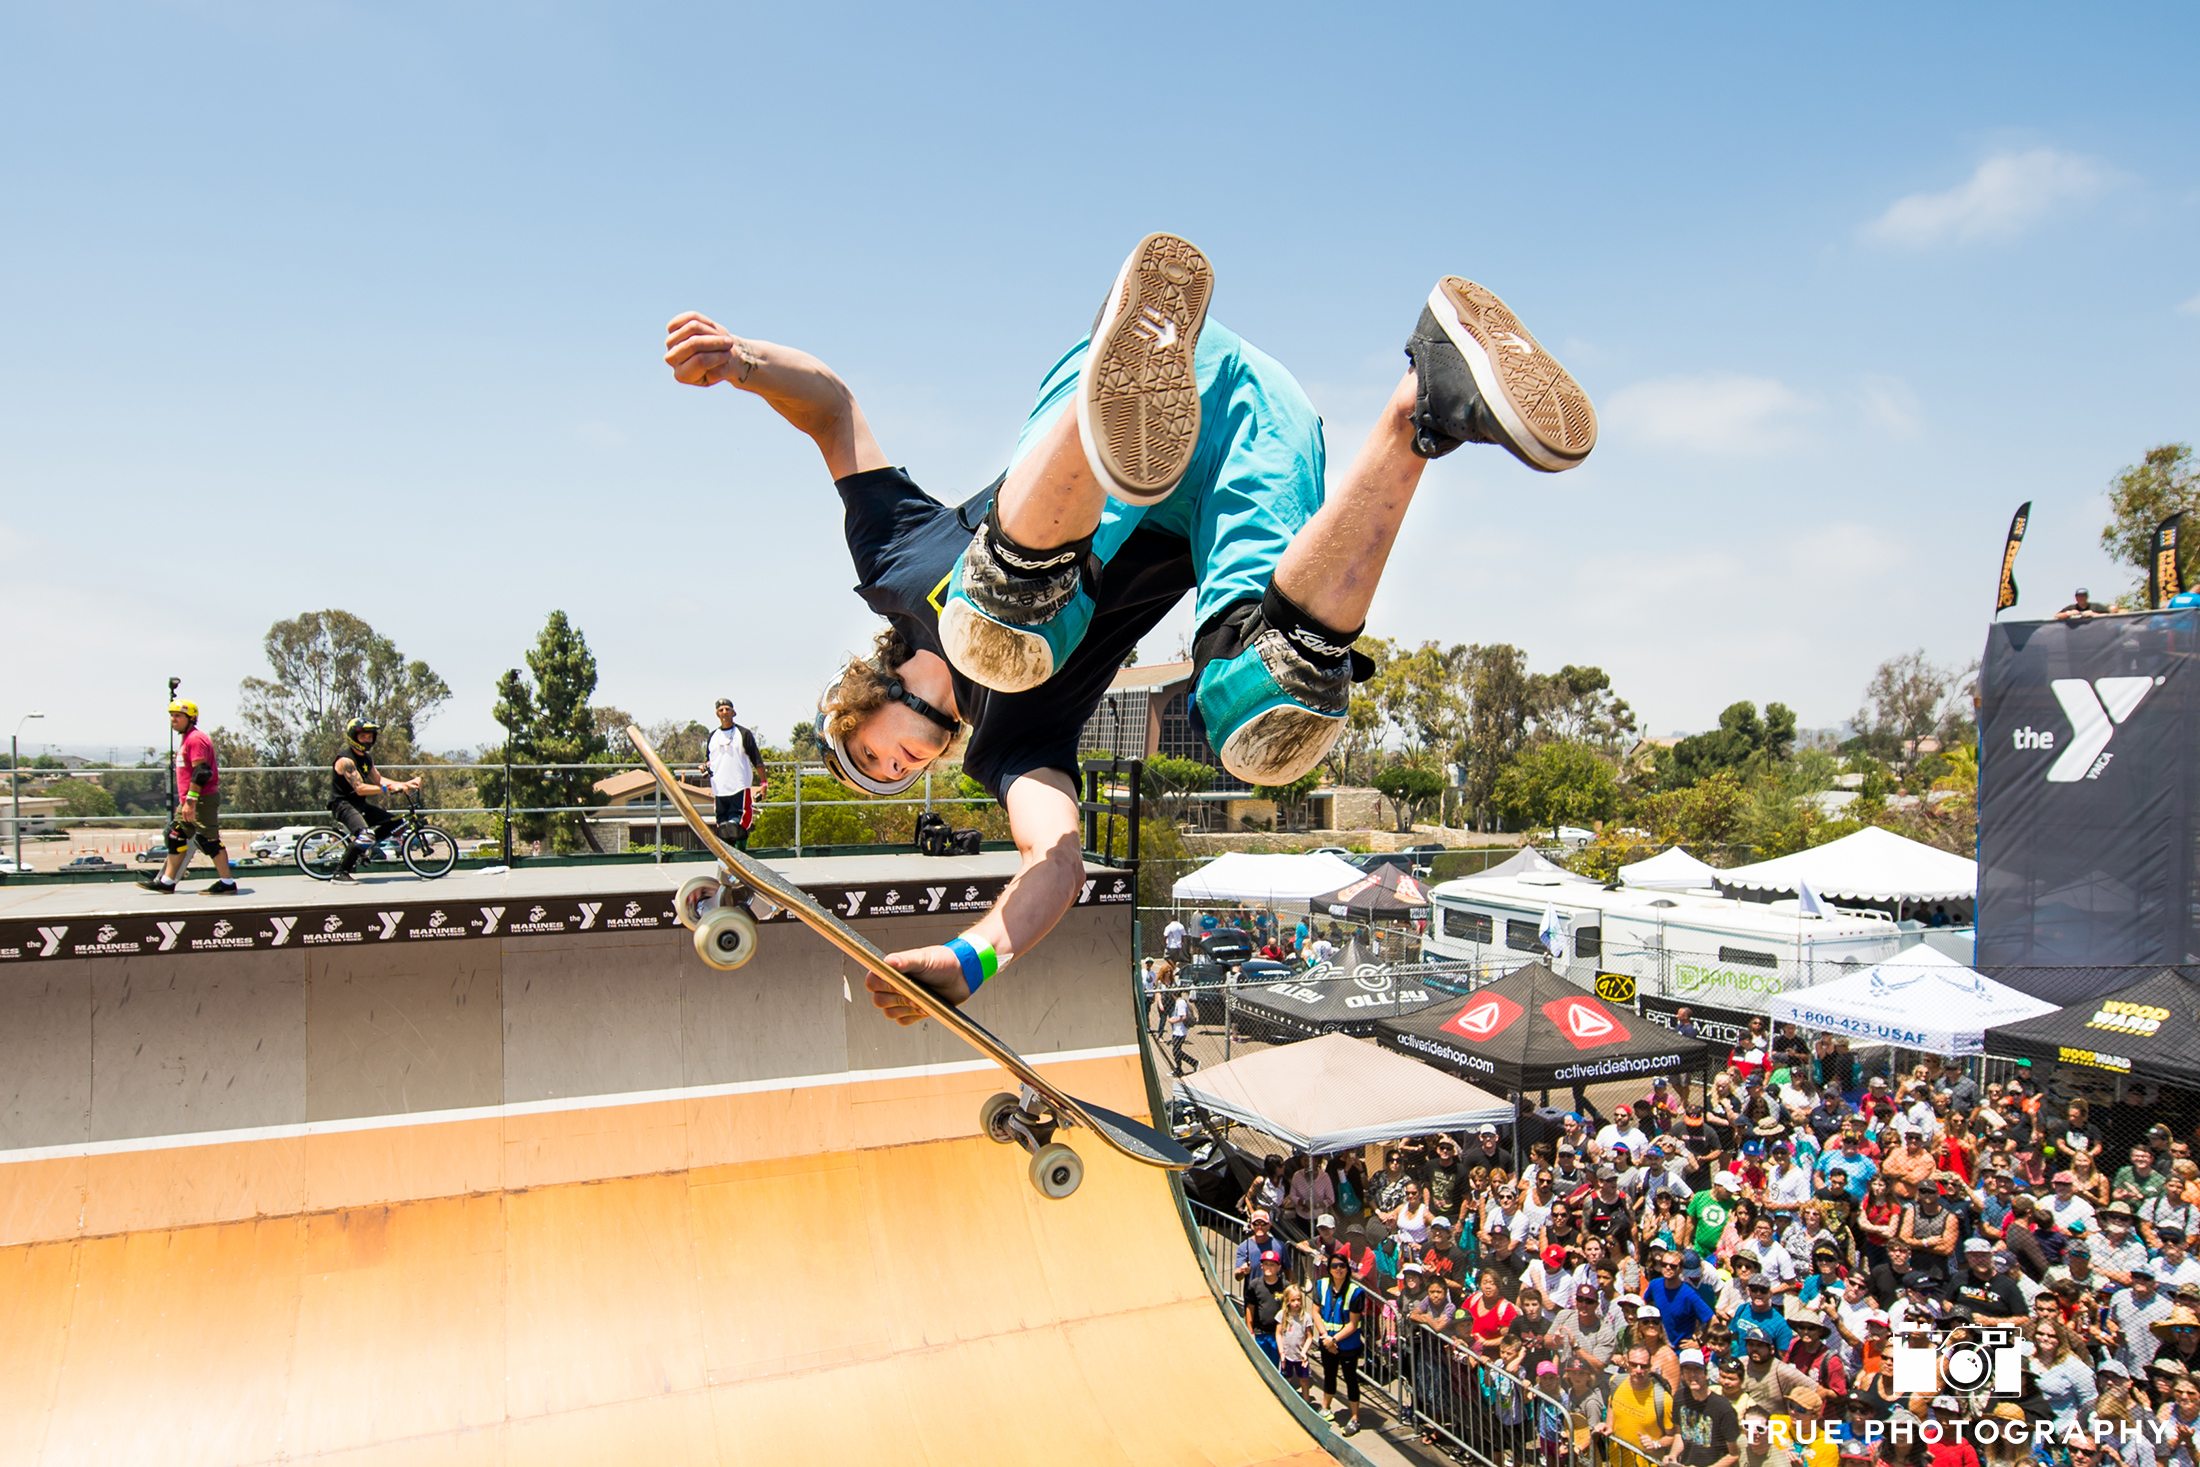  Beaver Fleming Skateboarding San Diego Grind For Life